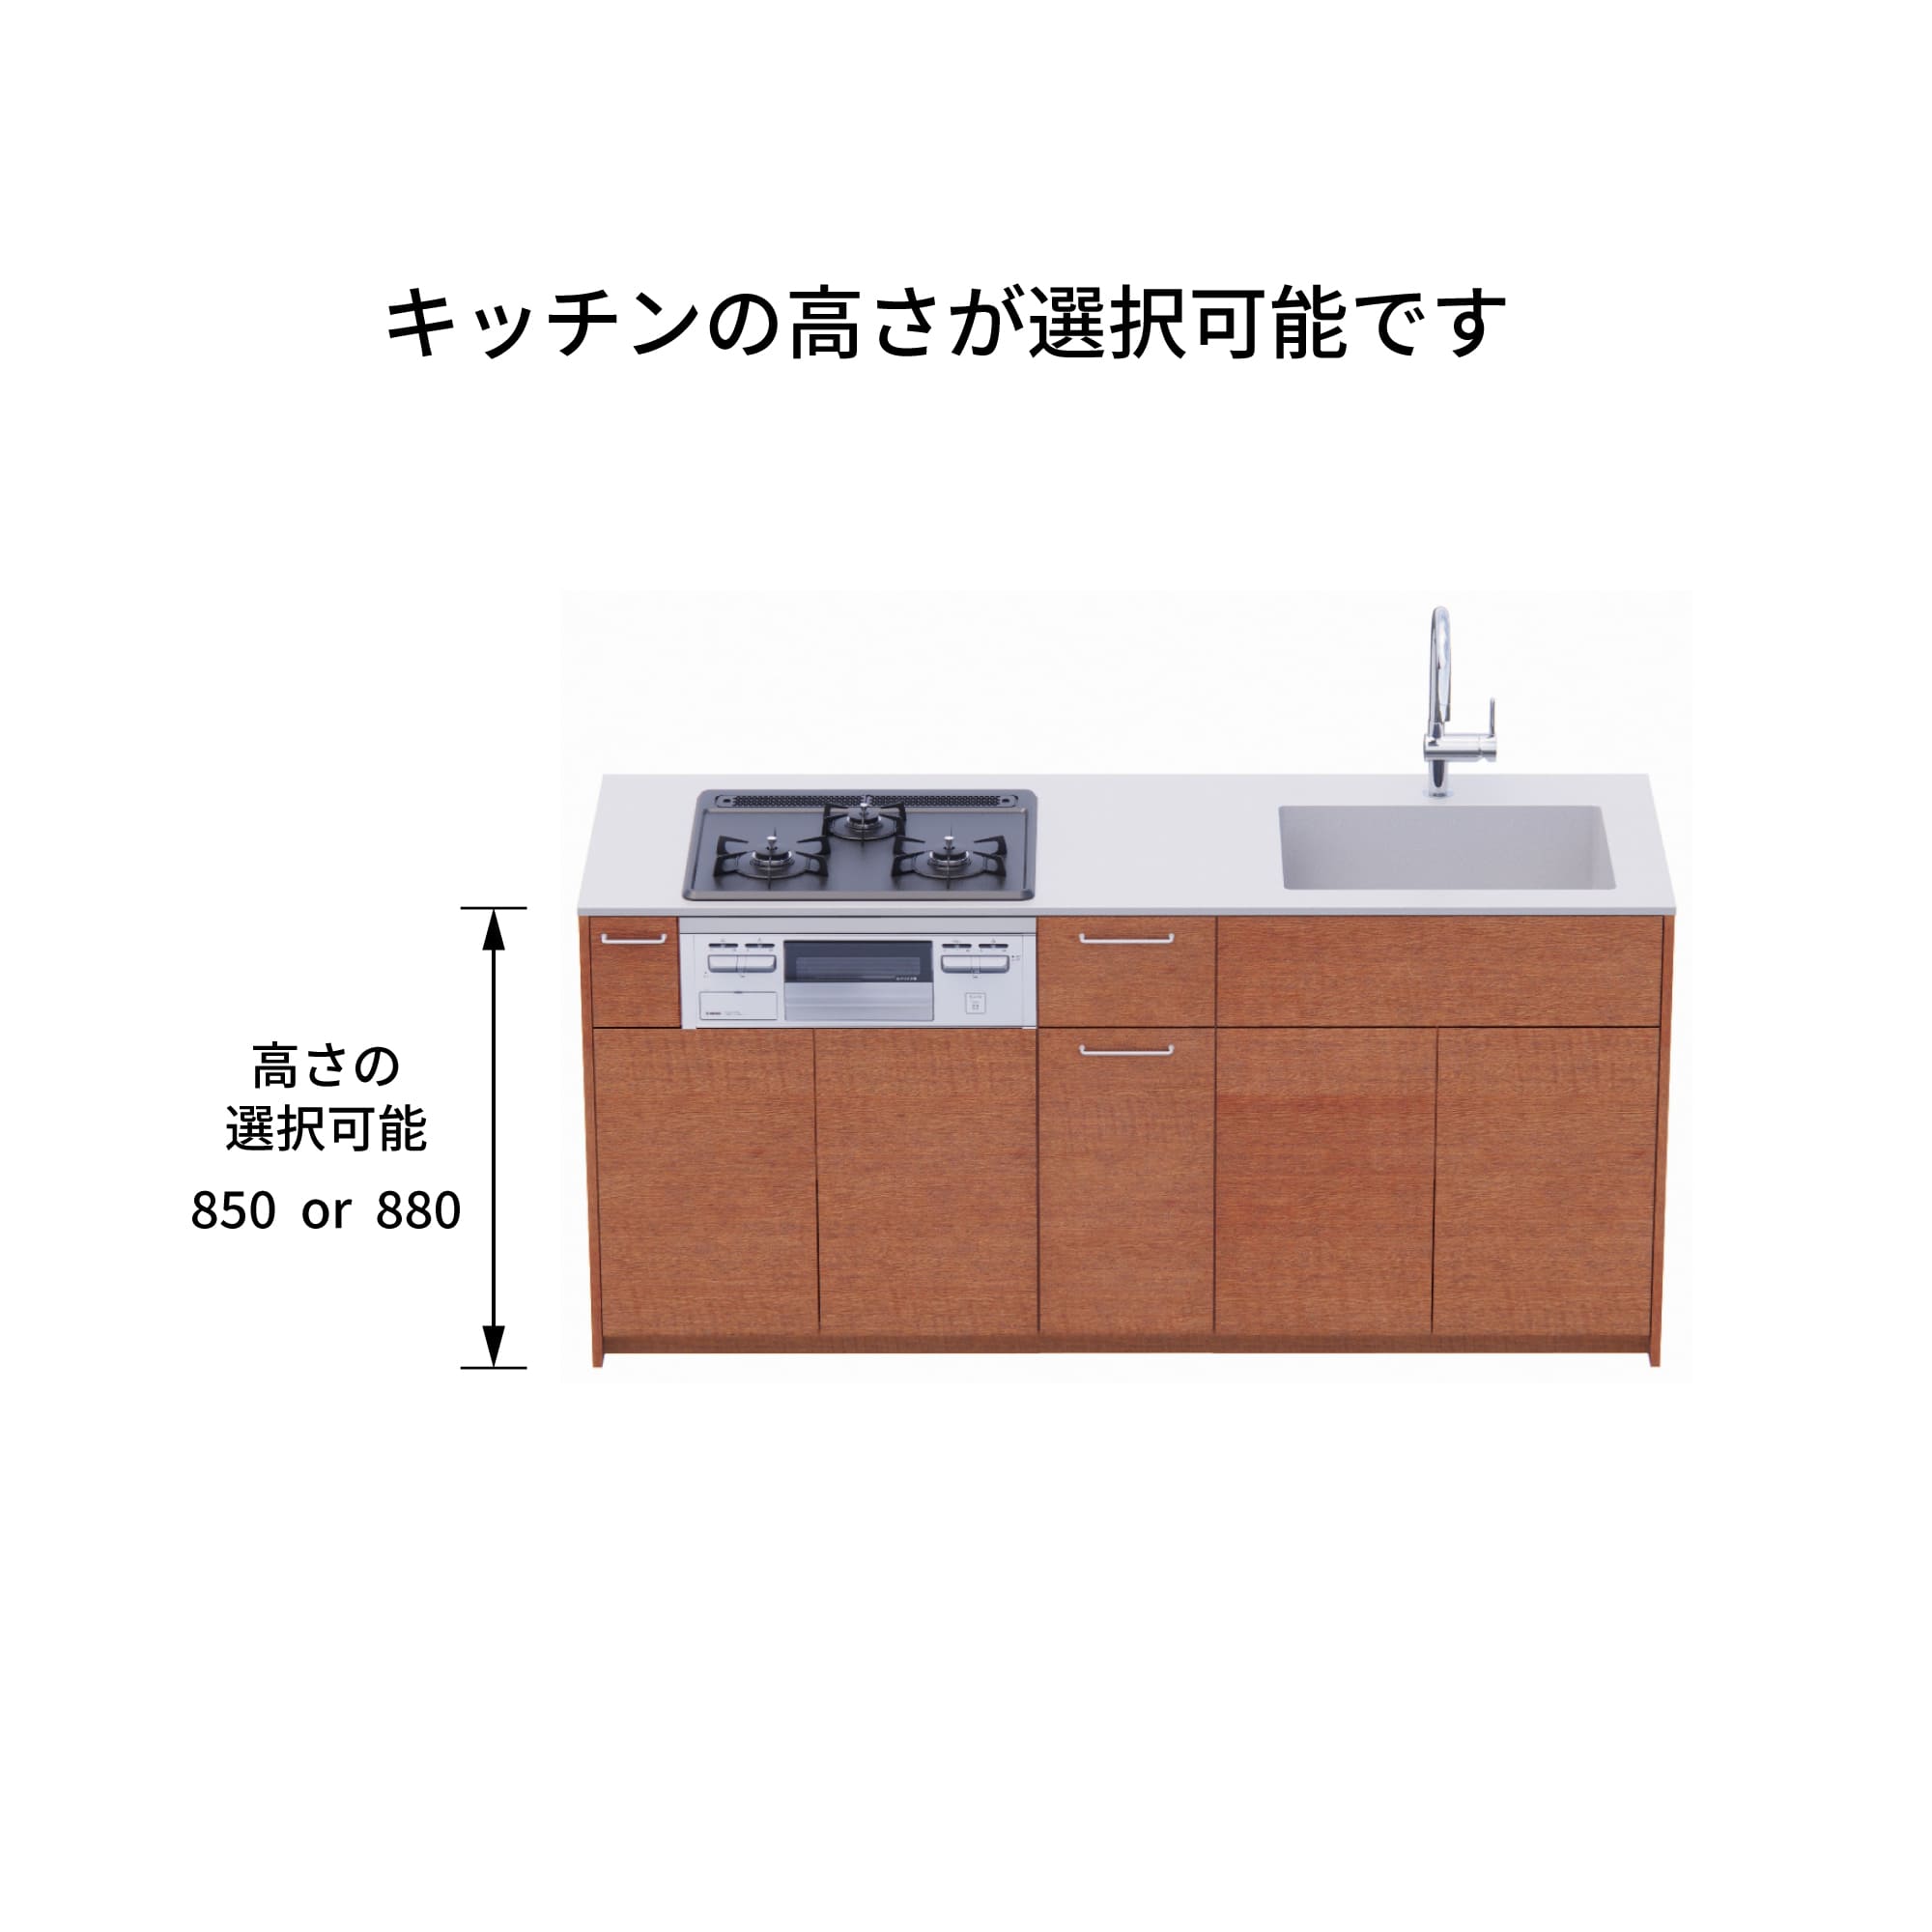 木製システムキッチン 壁付け型 W1990・コンロなし / オーブンなし / 食洗機あり KB-KC022-16-G183 キッチン高さを選択できます